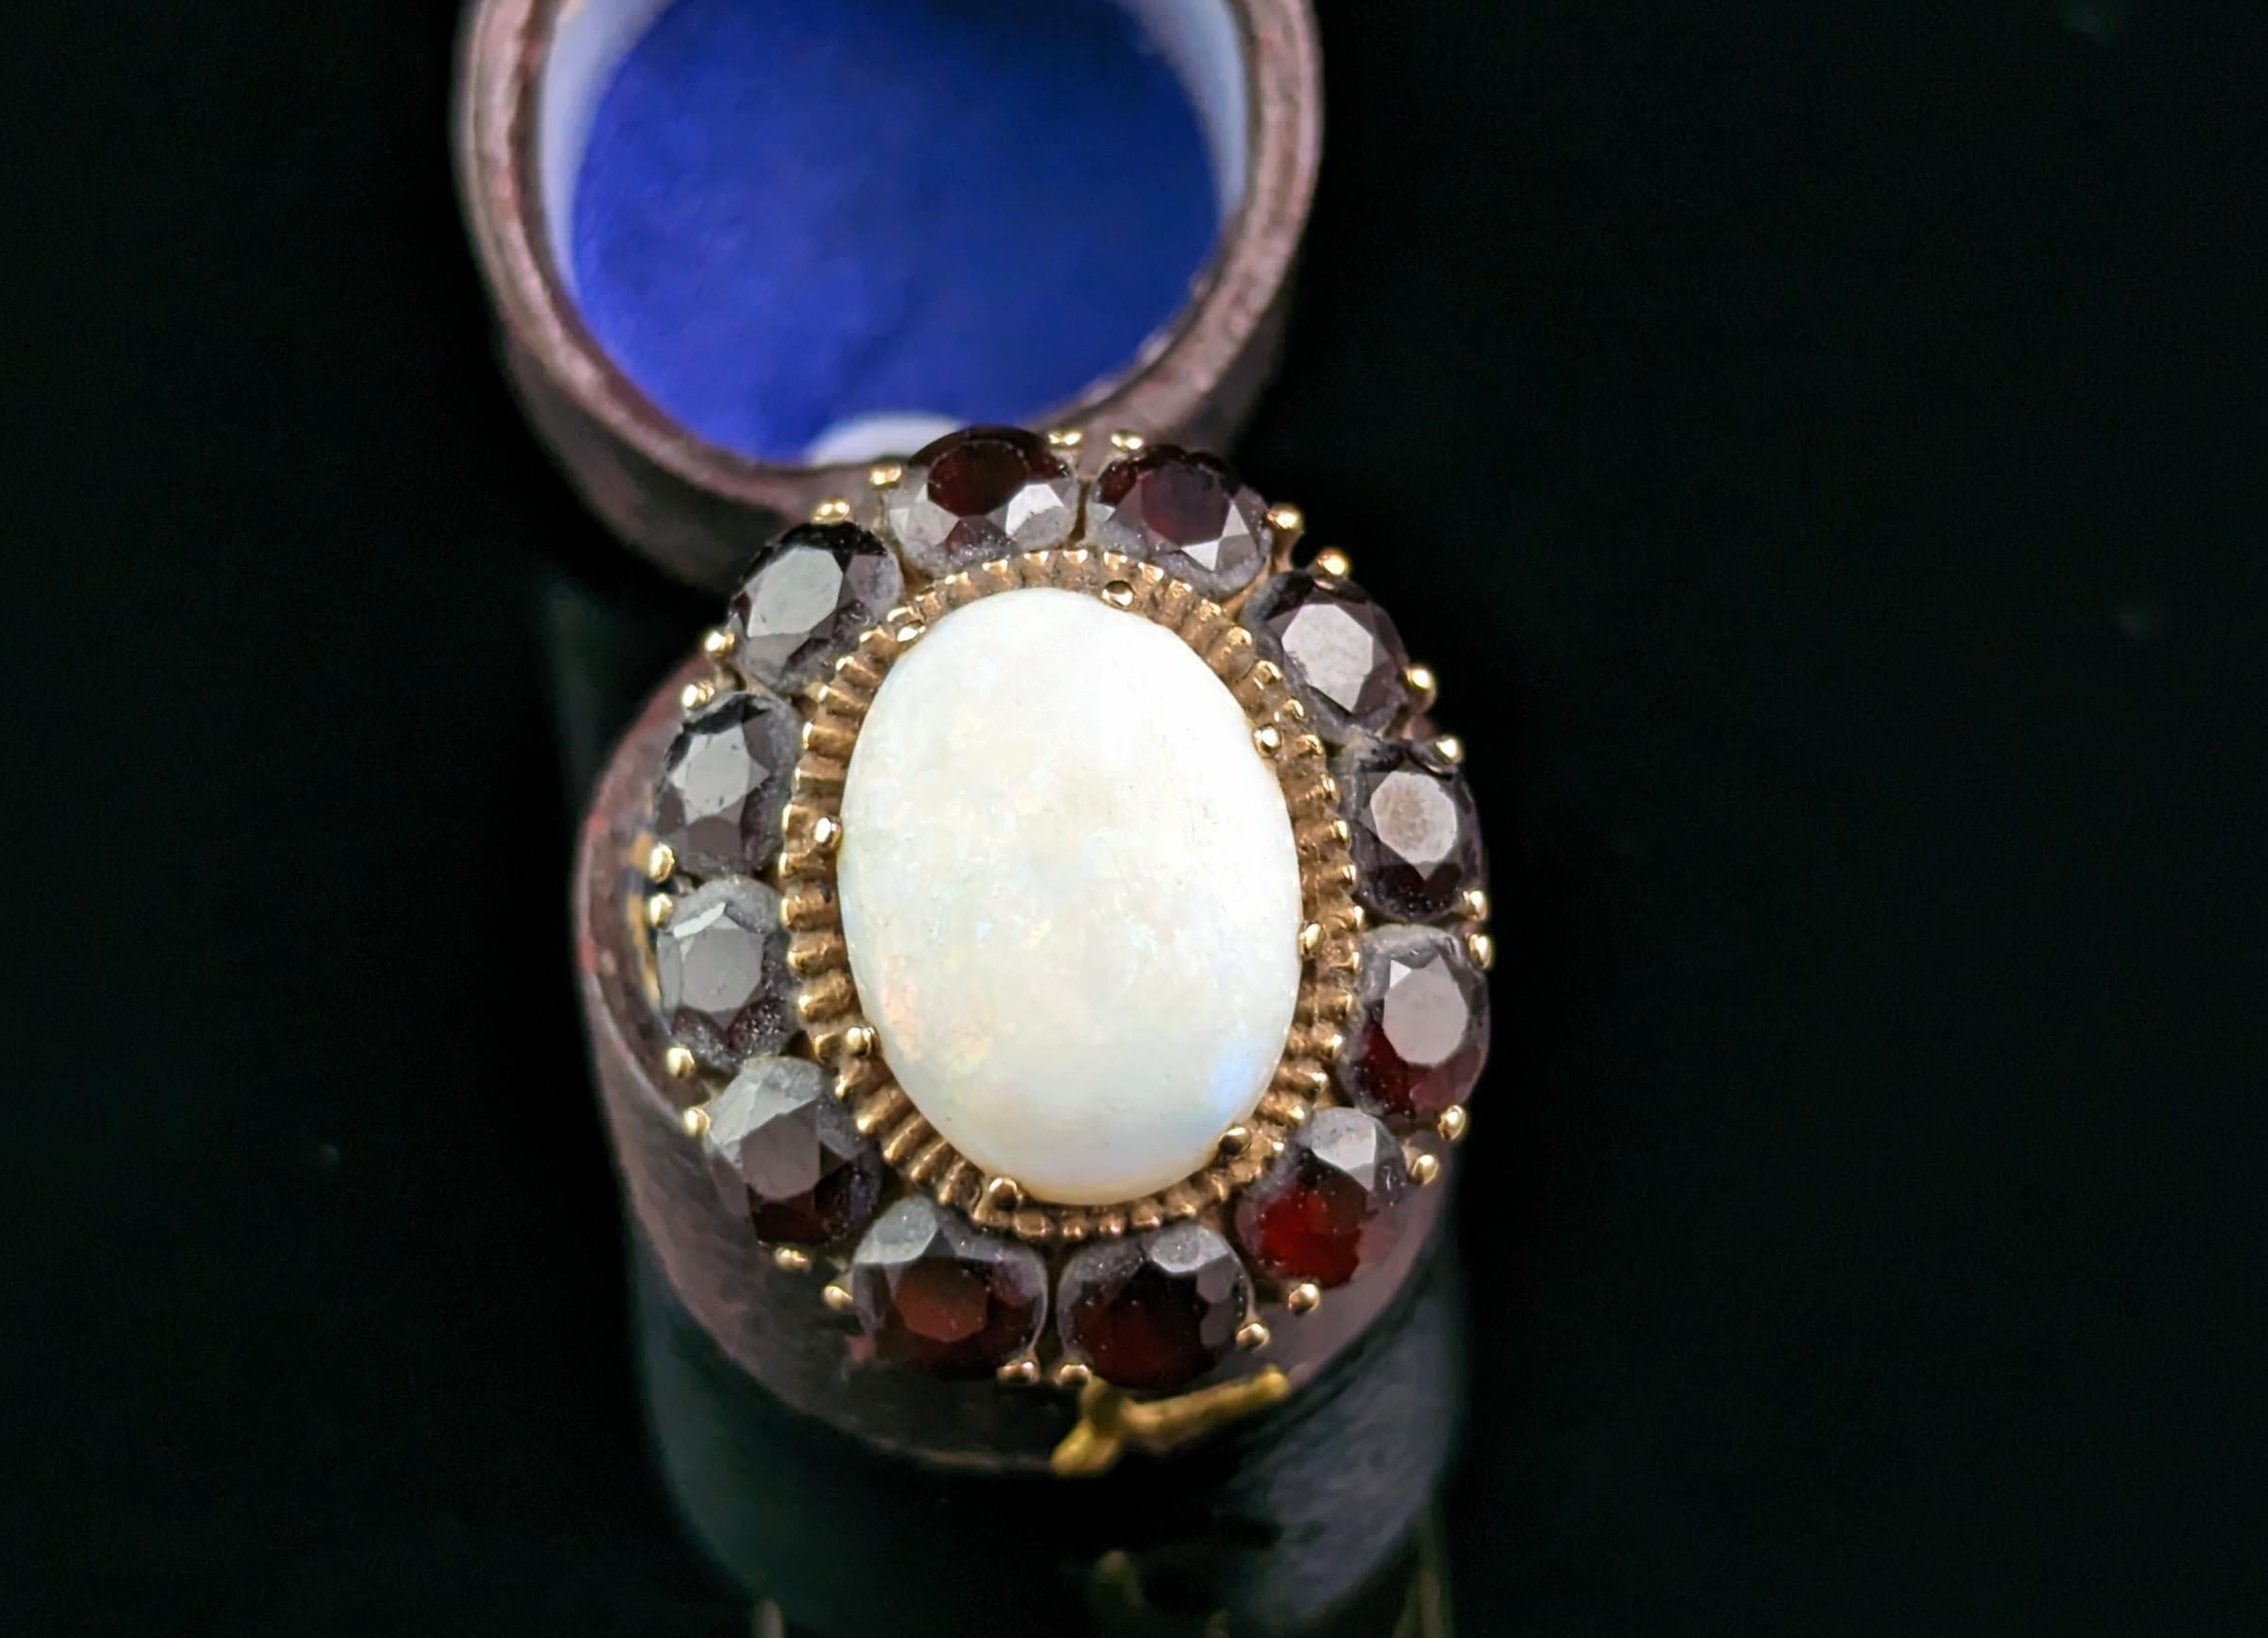 Ein großer Vintage Opal und Granat Cluster Ring in 9ct Gold.

Dieser Clusterring in Übergröße ist ein echtes Schmuckstück, das auf jeden Fall auffallen soll.

Er ist aus 9-karätigem Gelbgold gefertigt, mit einem glatten, polierten Band und hübschen,